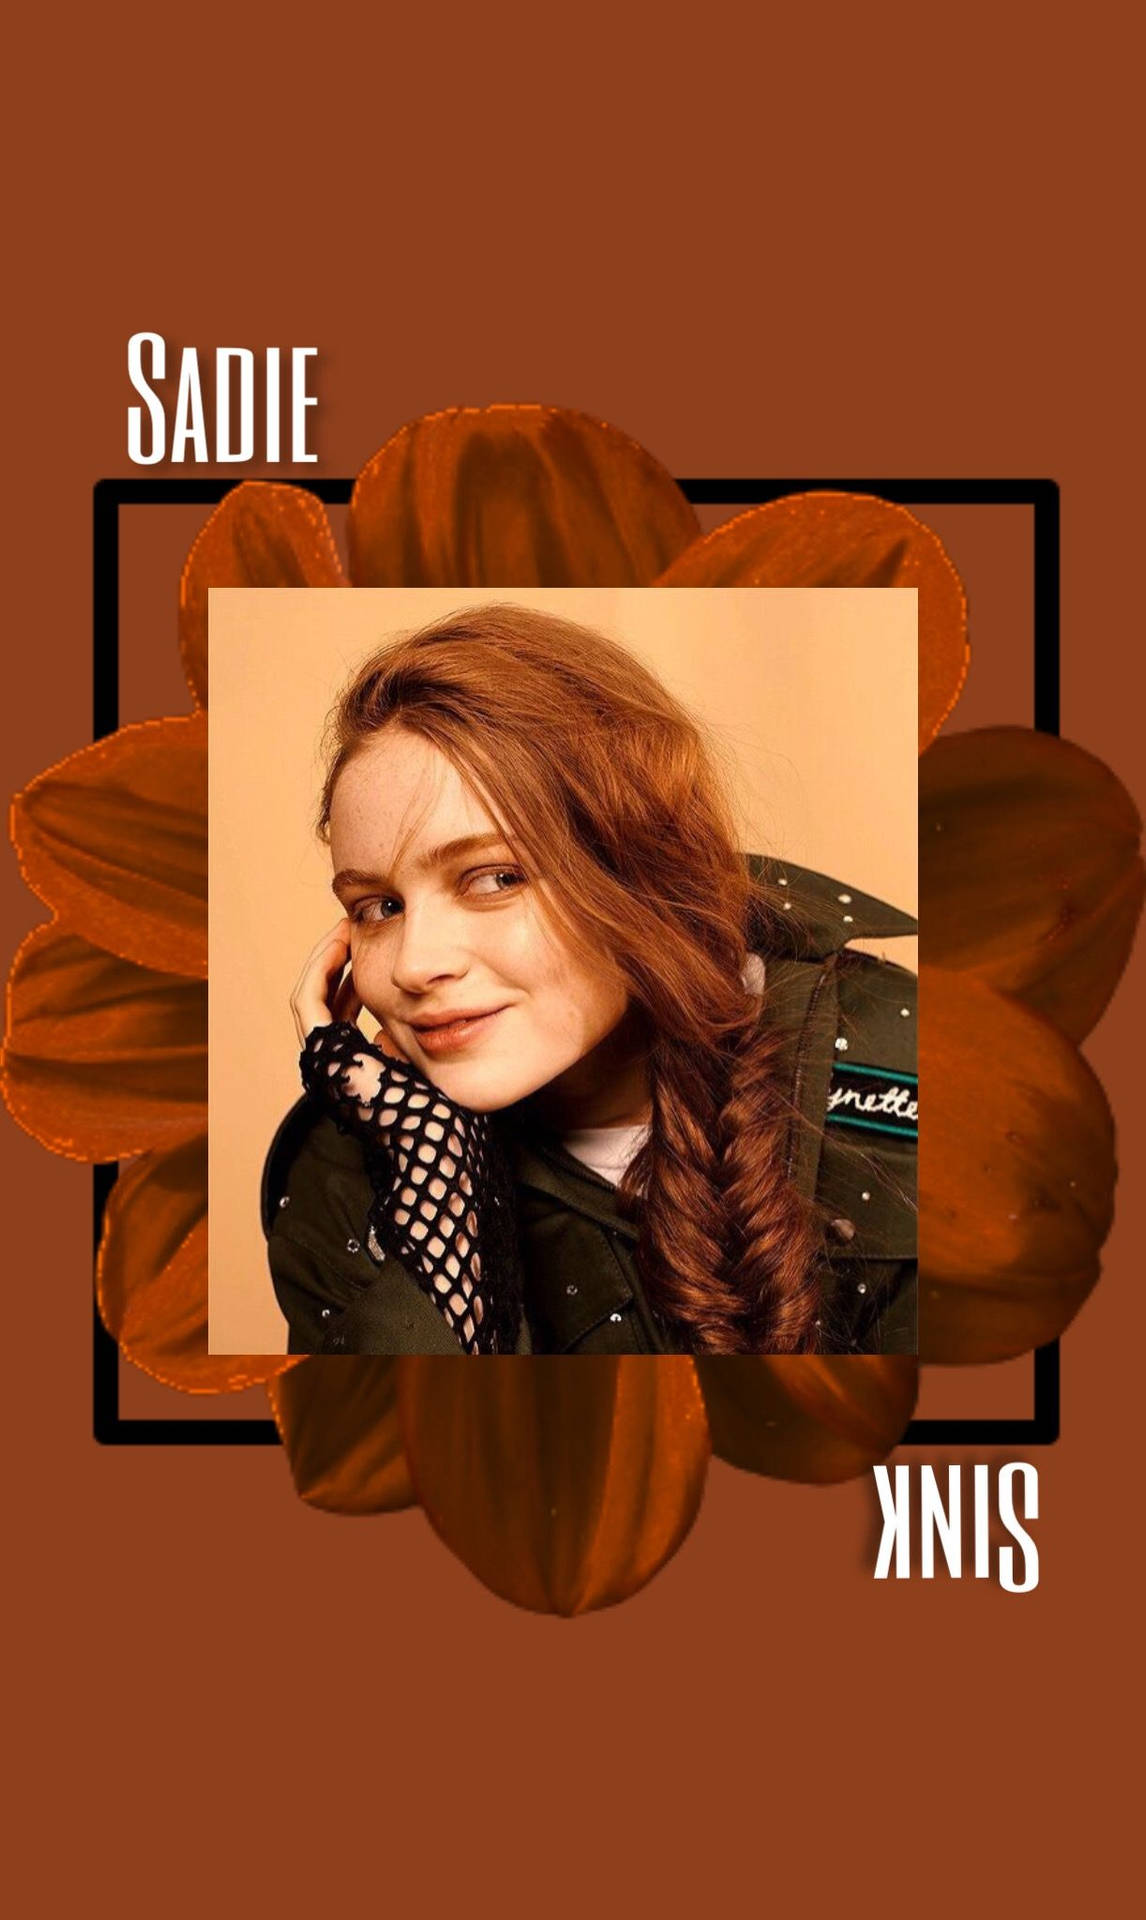 Digital Poster Of Sadie Sink